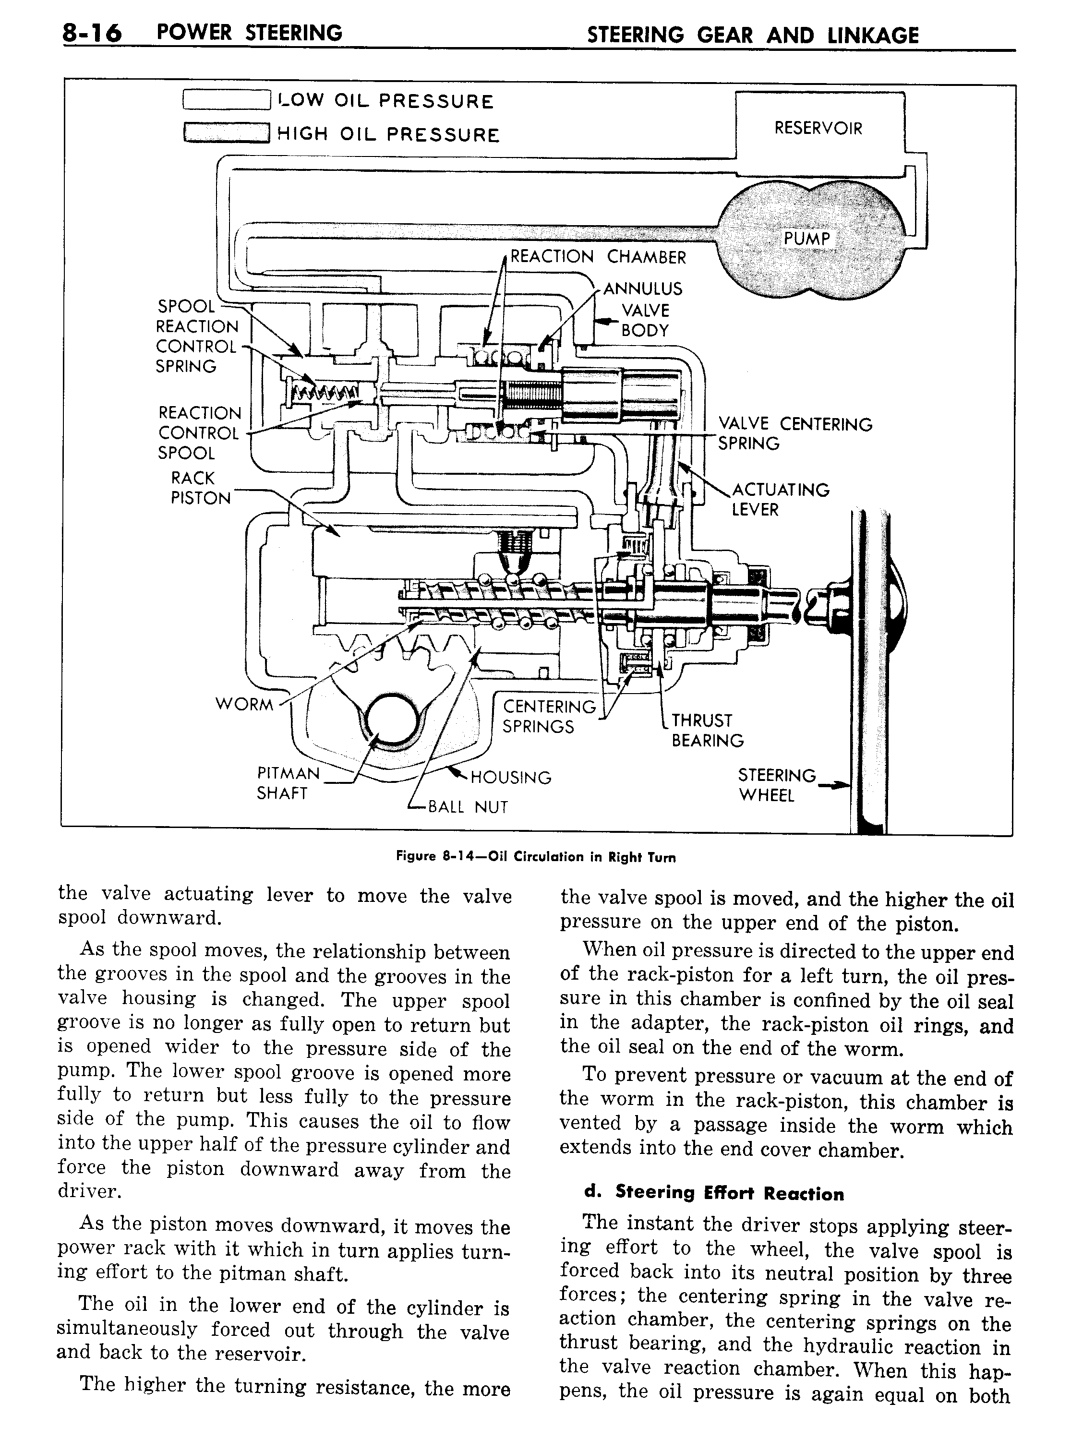 n_09 1957 Buick Shop Manual - Steering-016-016.jpg